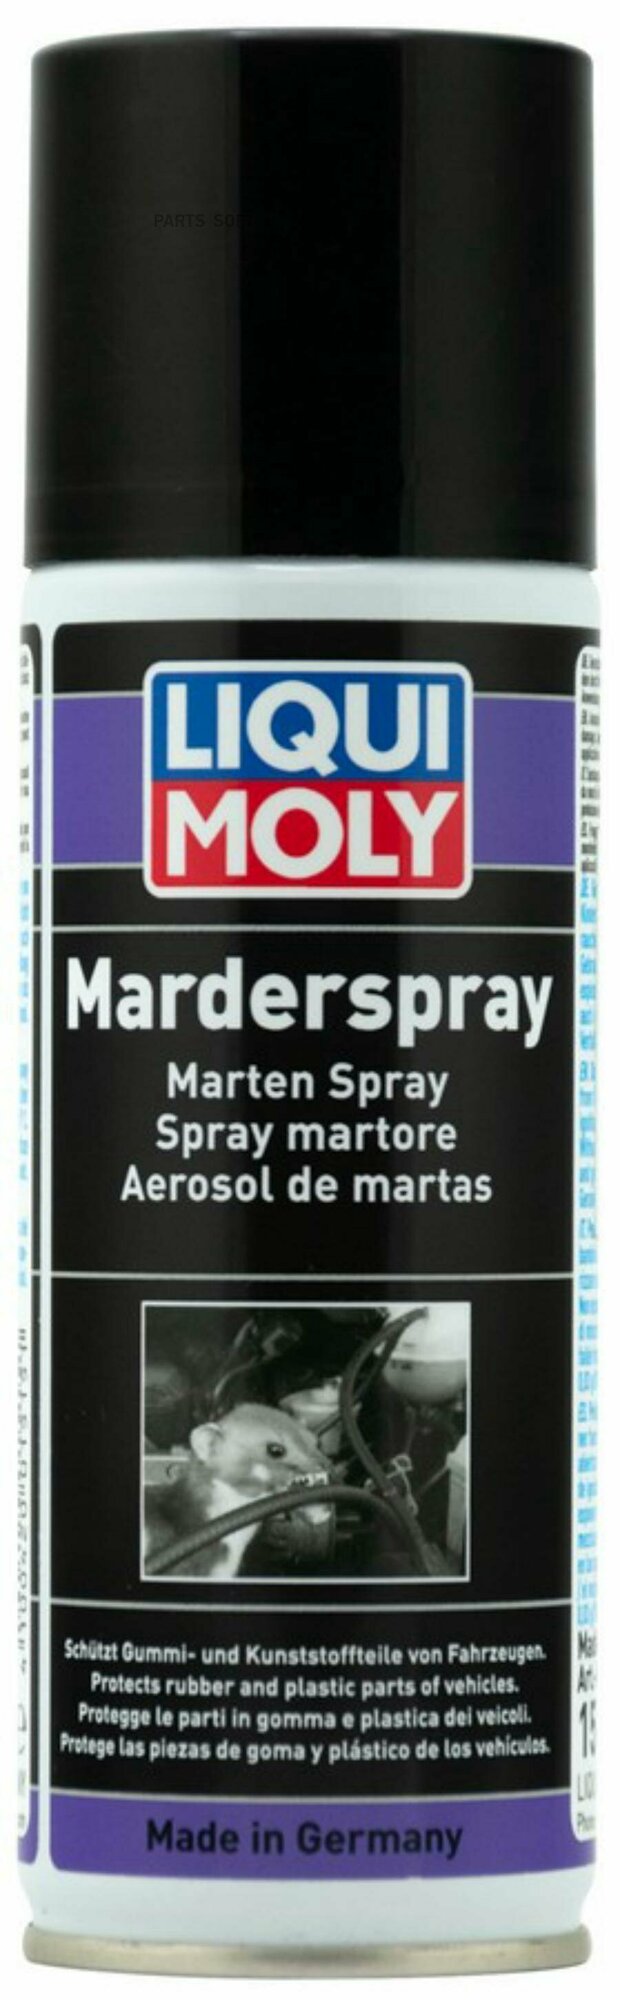 LIQUI MOLY 1515 Средство защитное 200мл - защитный спрей от грызунов Marder-Spray